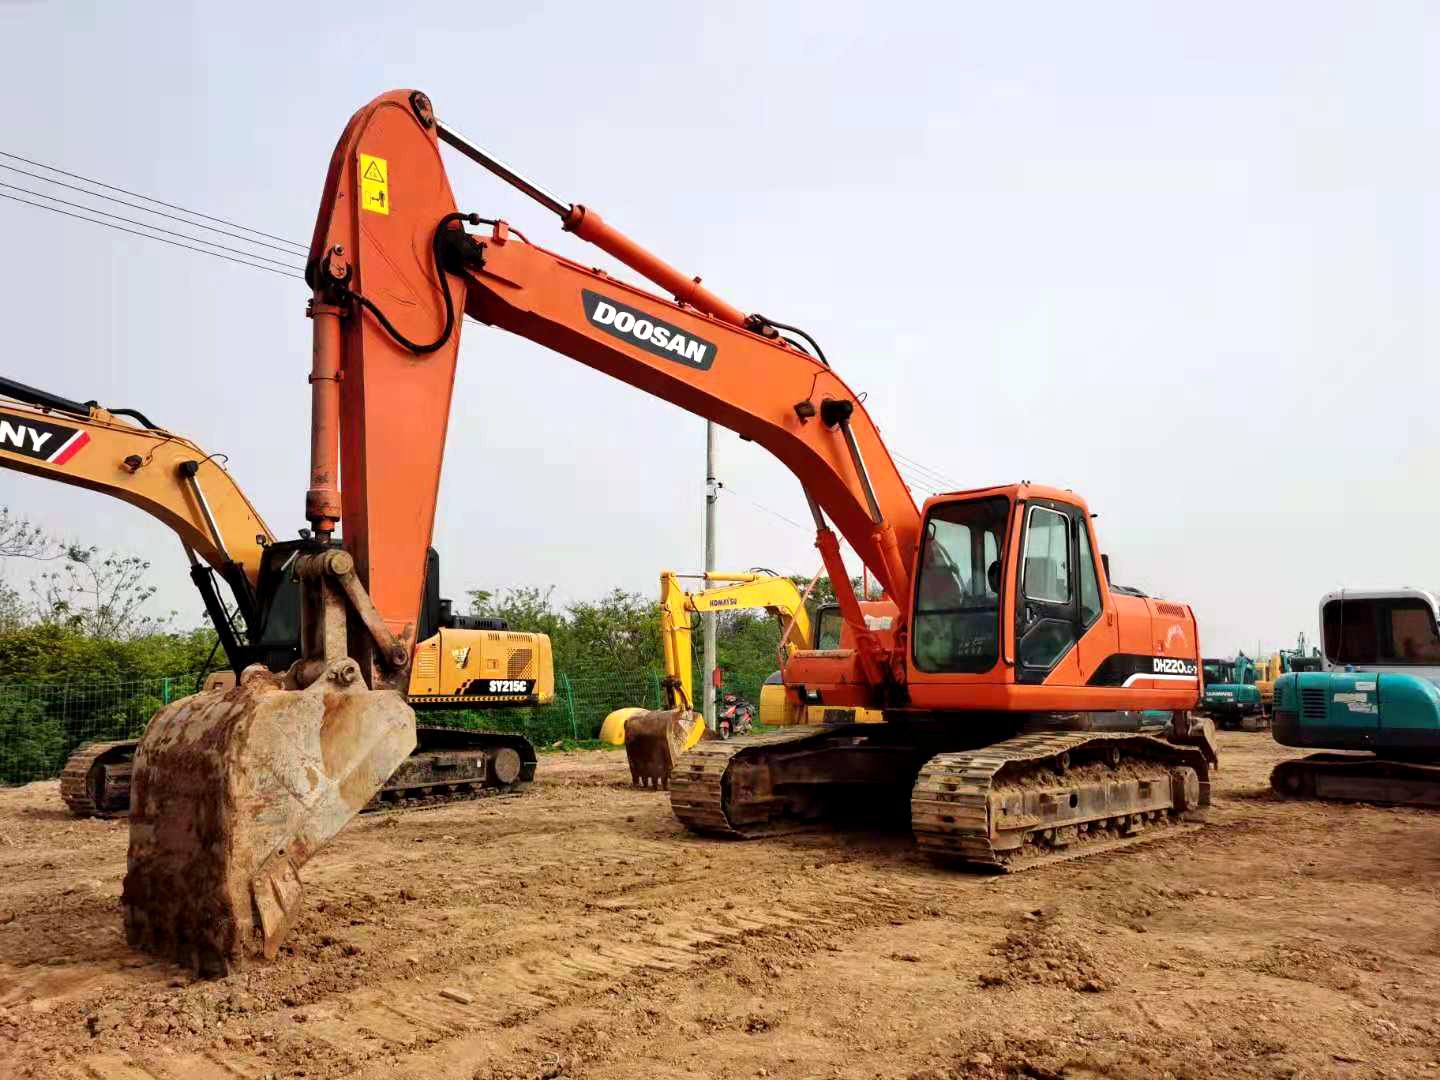 Doosan DH220lc-7 excavator